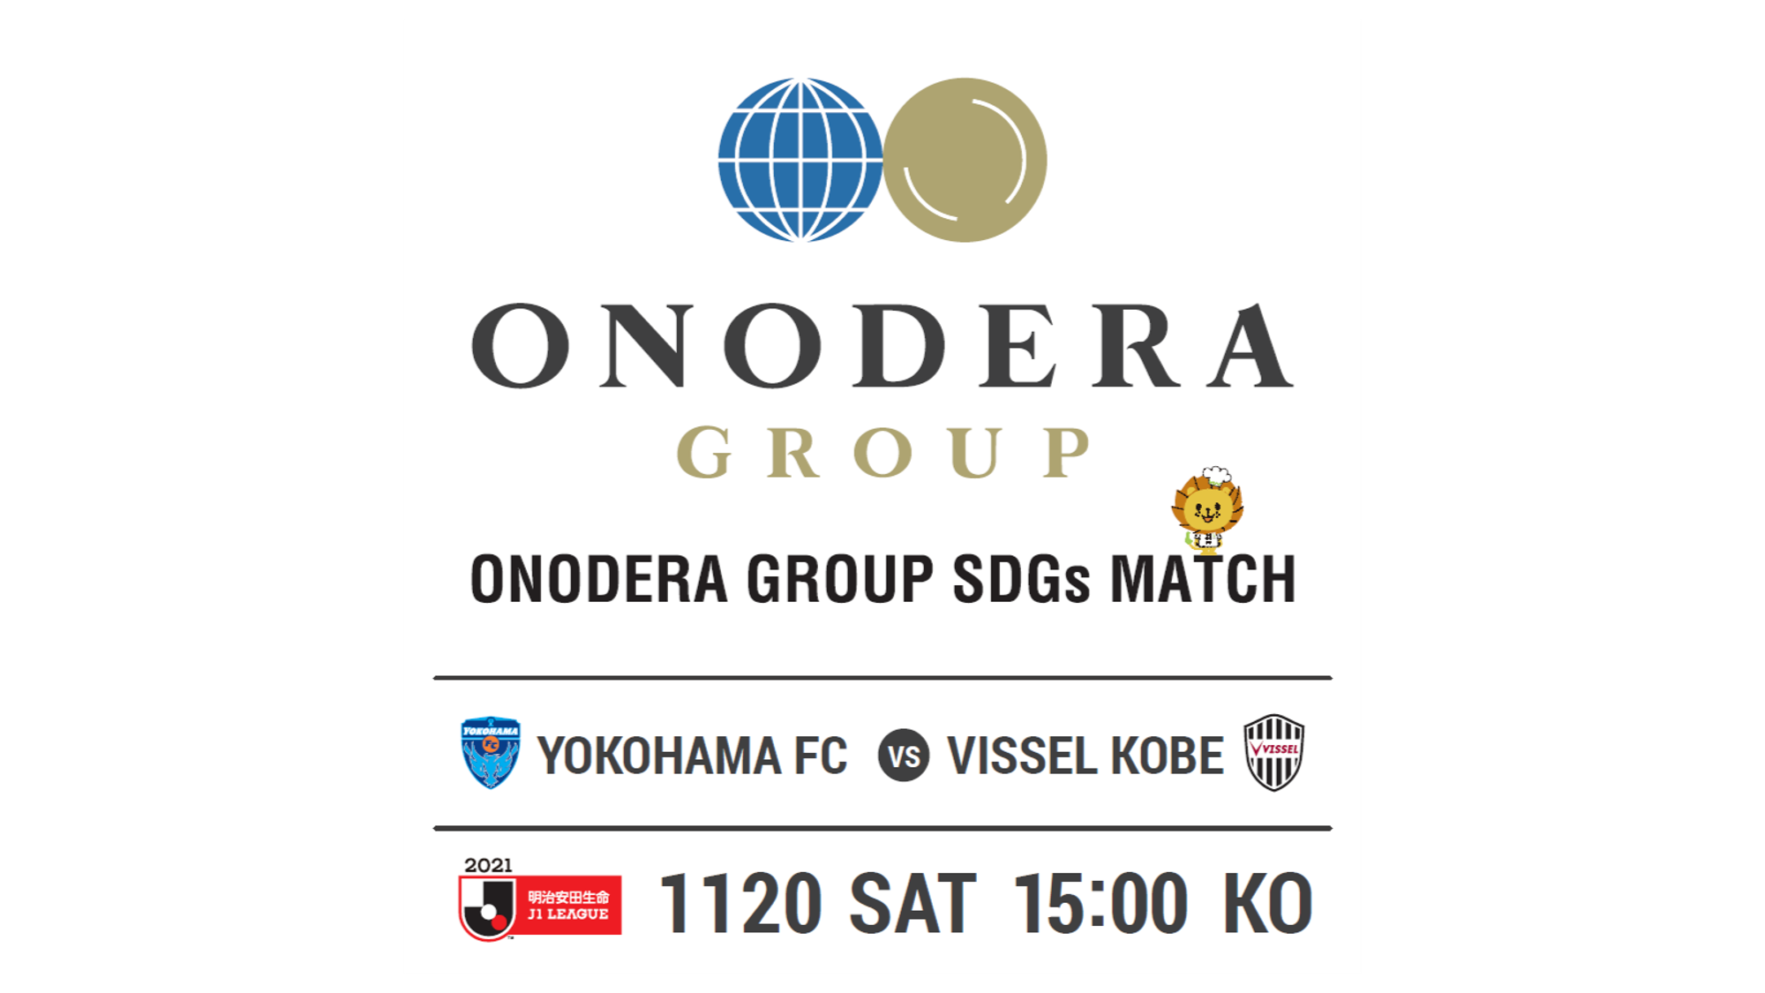 11月日 土 横浜fcホームゲームを Onodera Group Sdgs Match として開催 給食委託会社 株式会社leoc